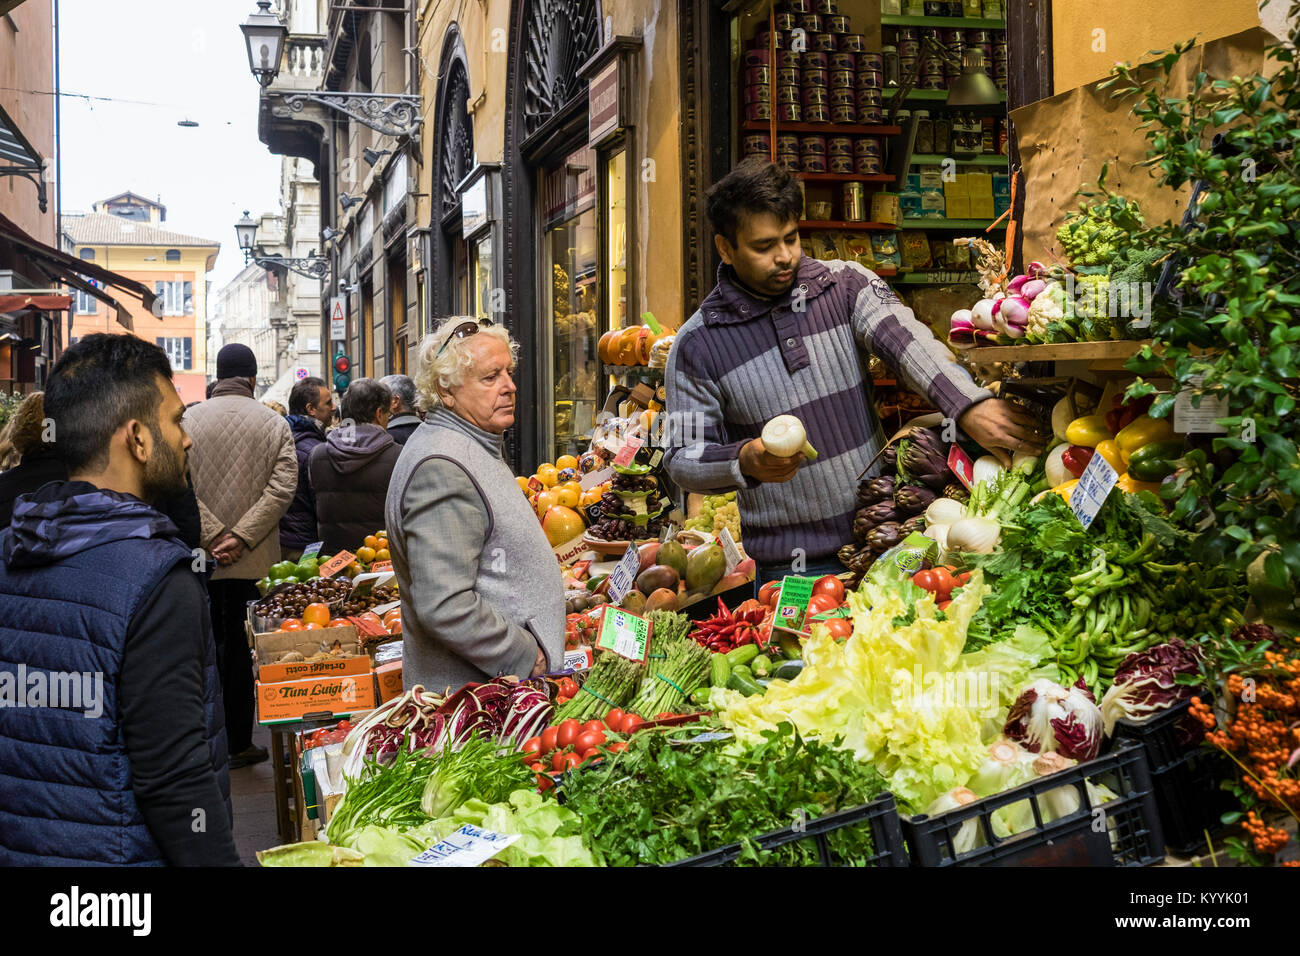 Markt in Bologna, Italien, Verkauf von Obst und Gemüse Abschaltdruck Stockfoto